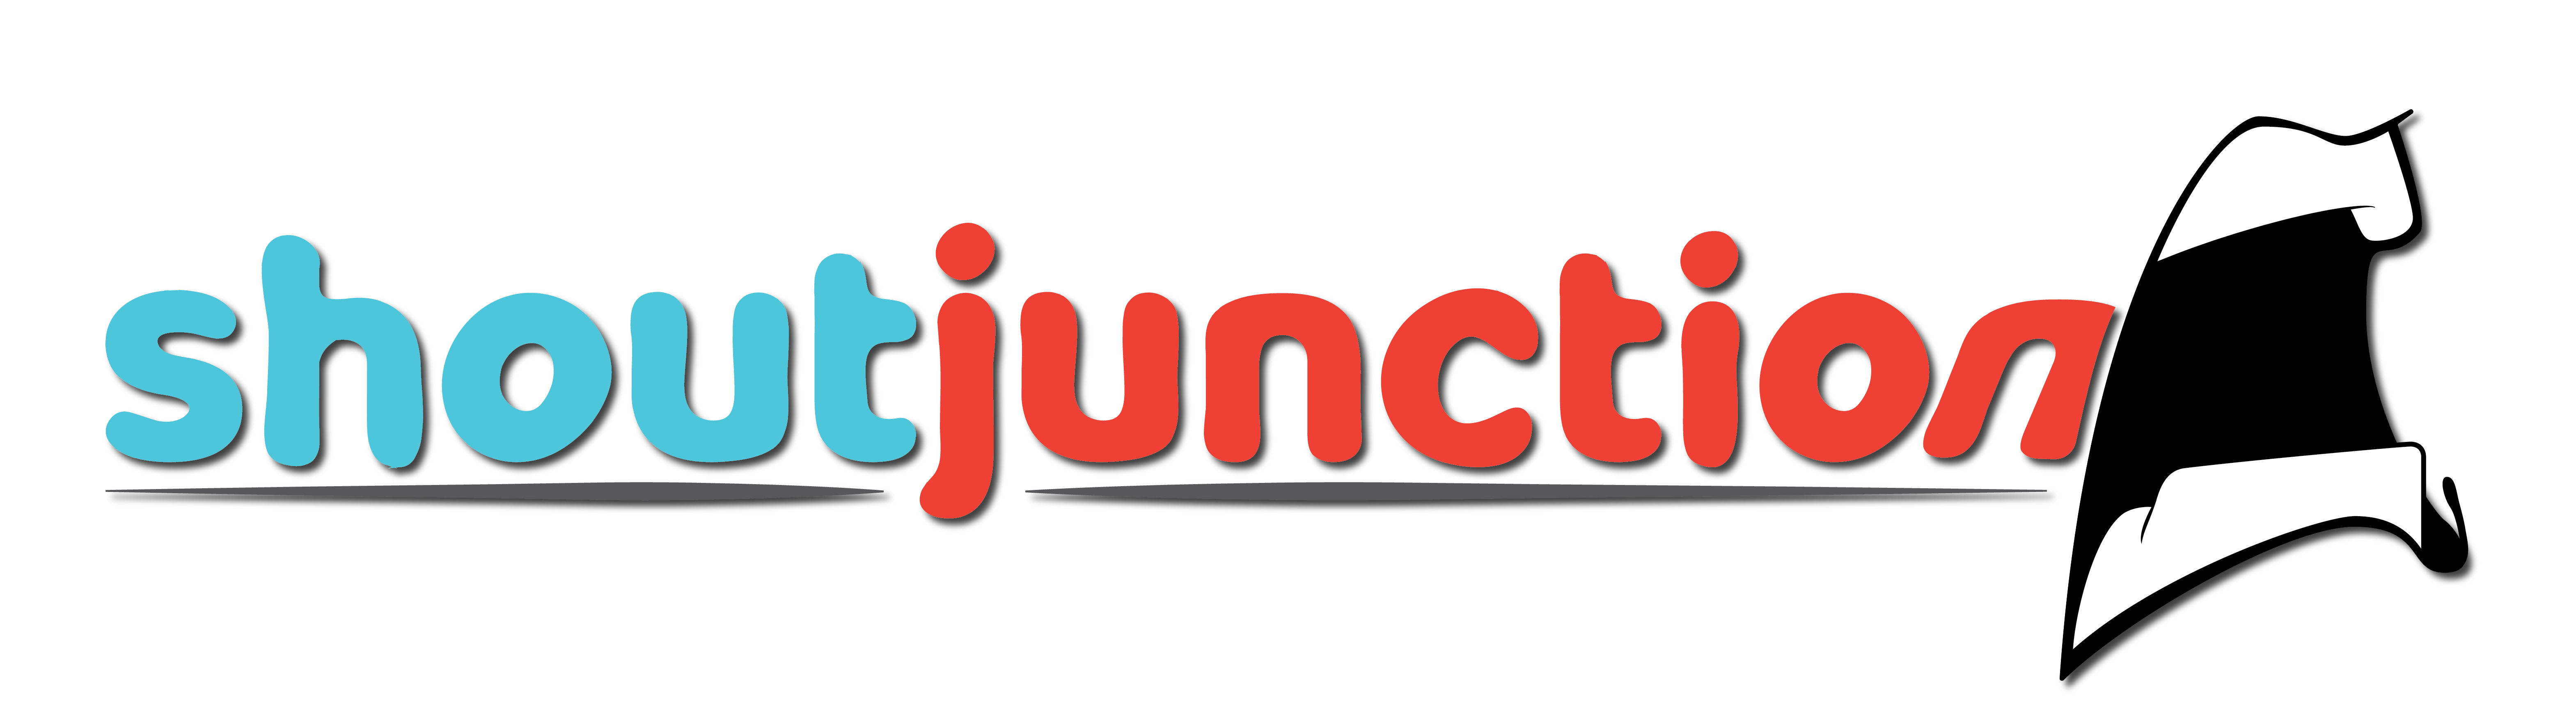 Shout Junction logo